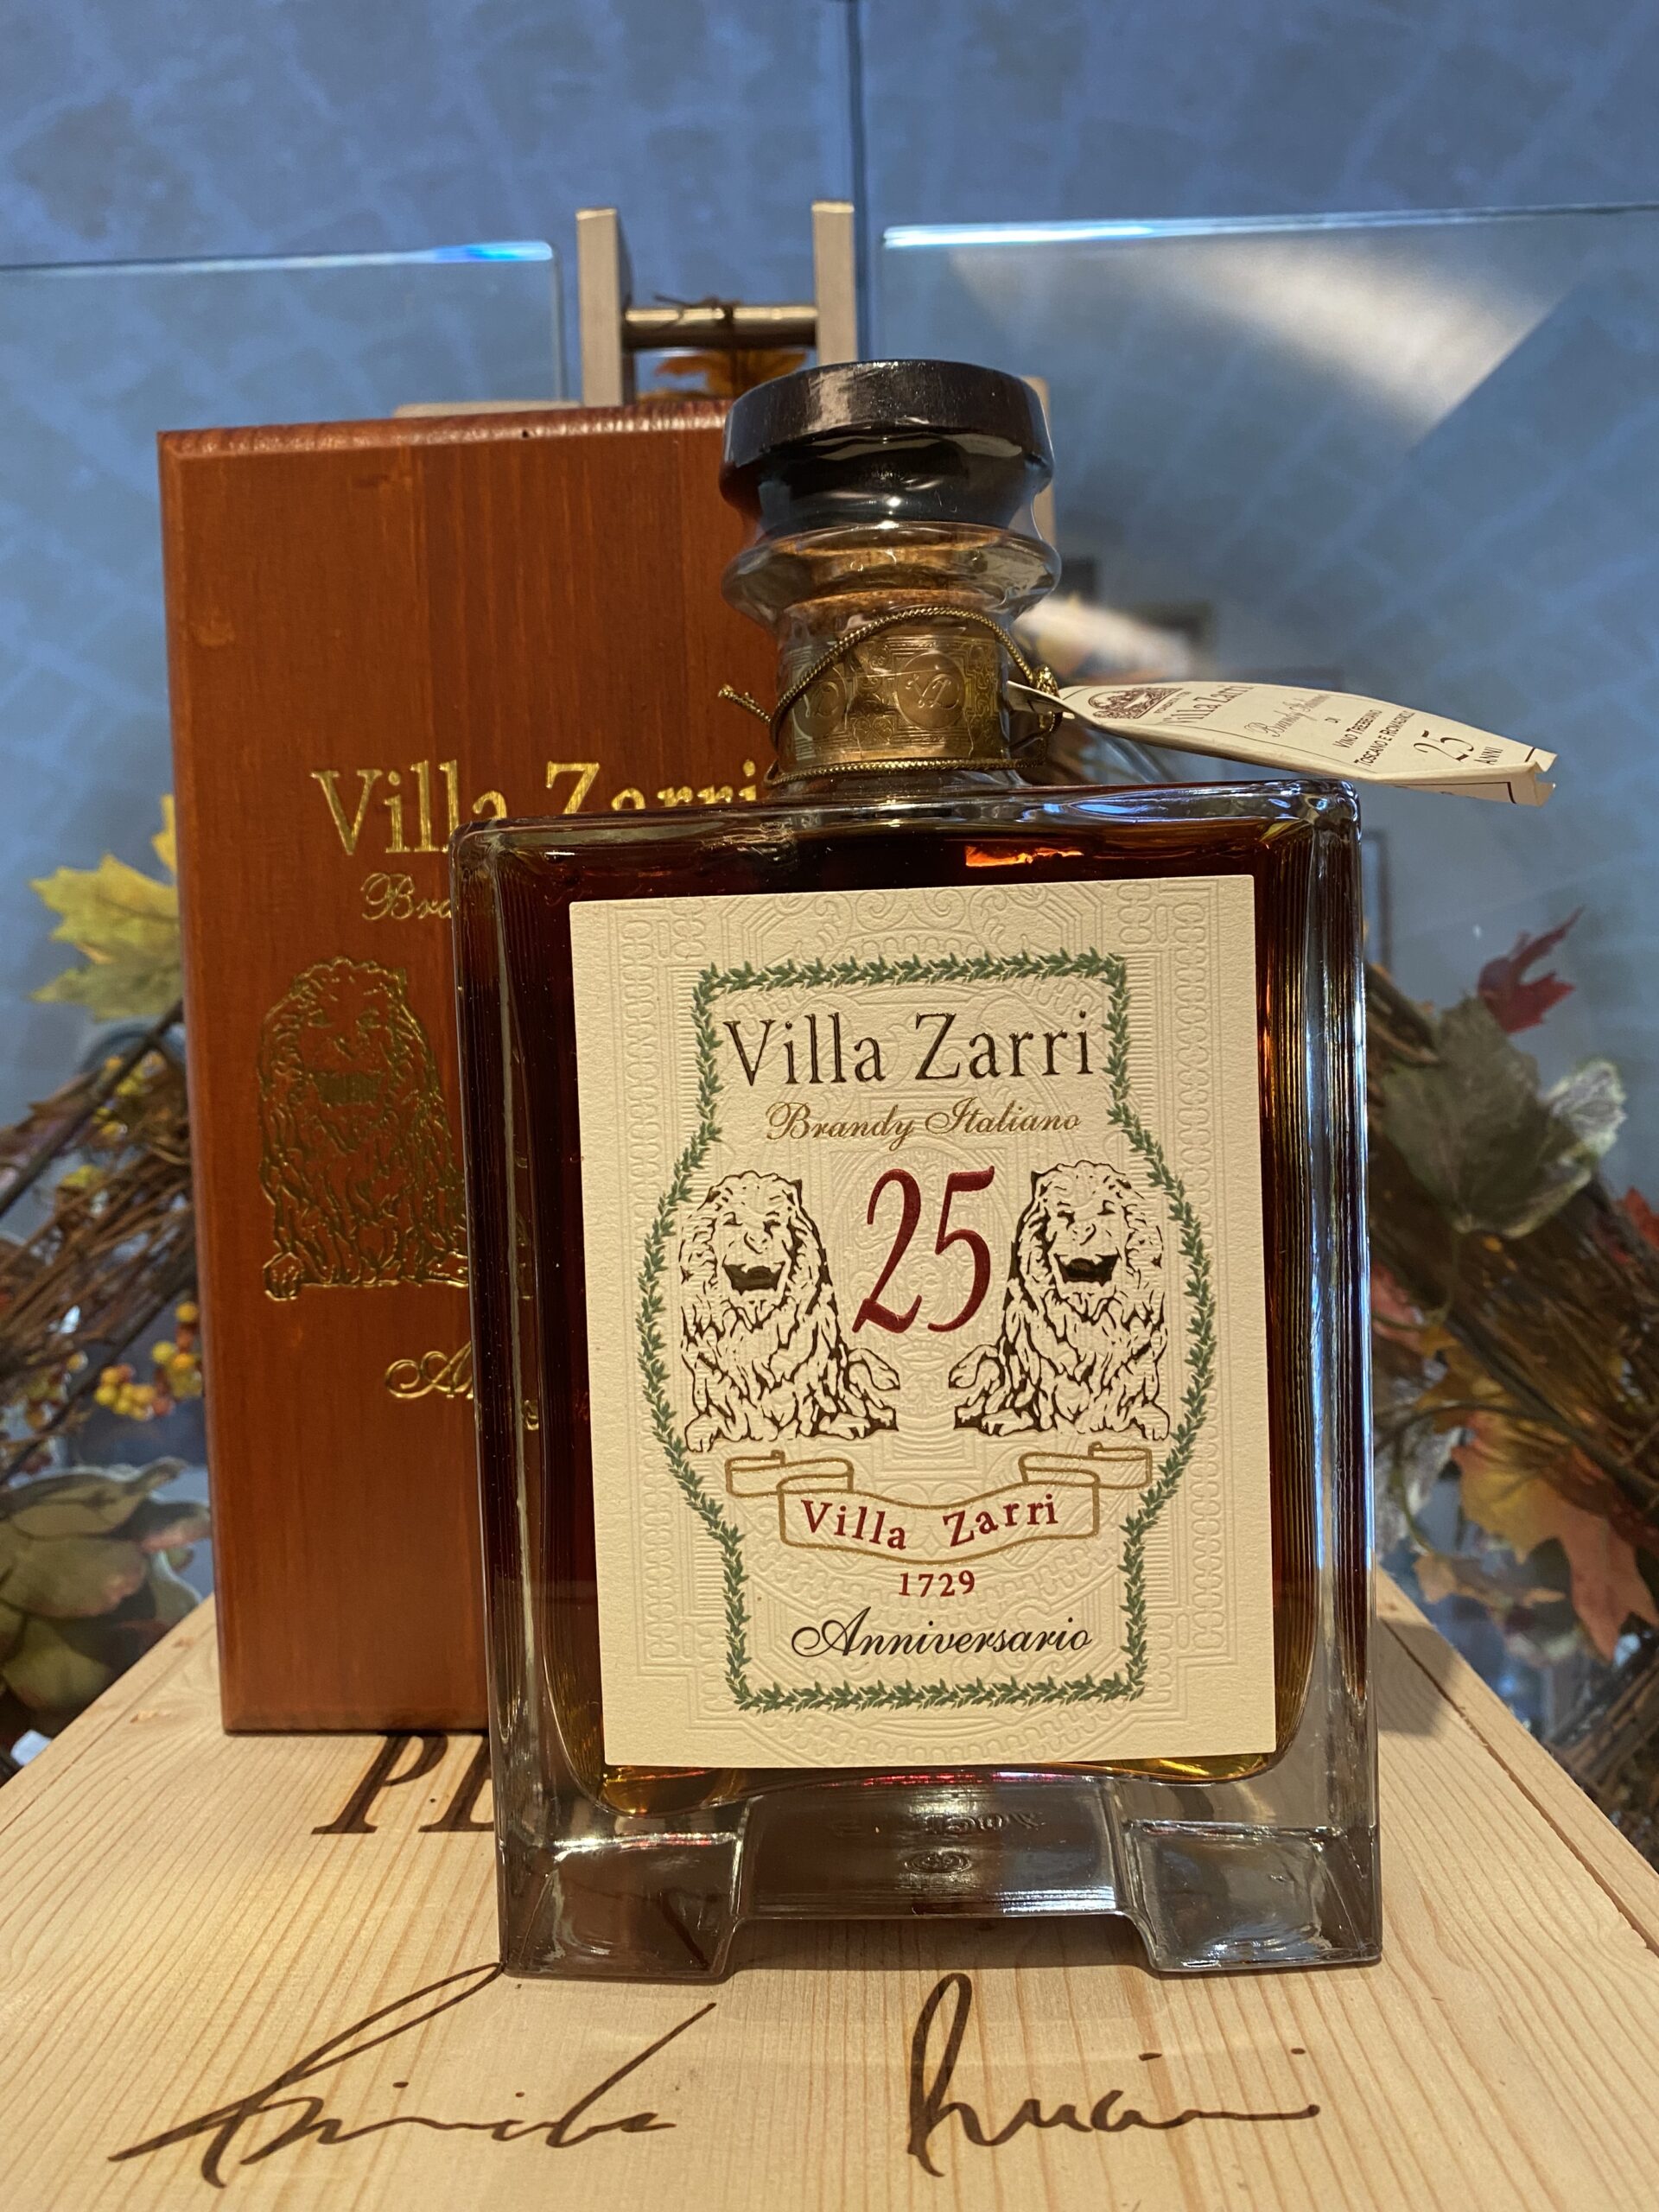 Villa Zarri 25 anni Anniversario Brandy